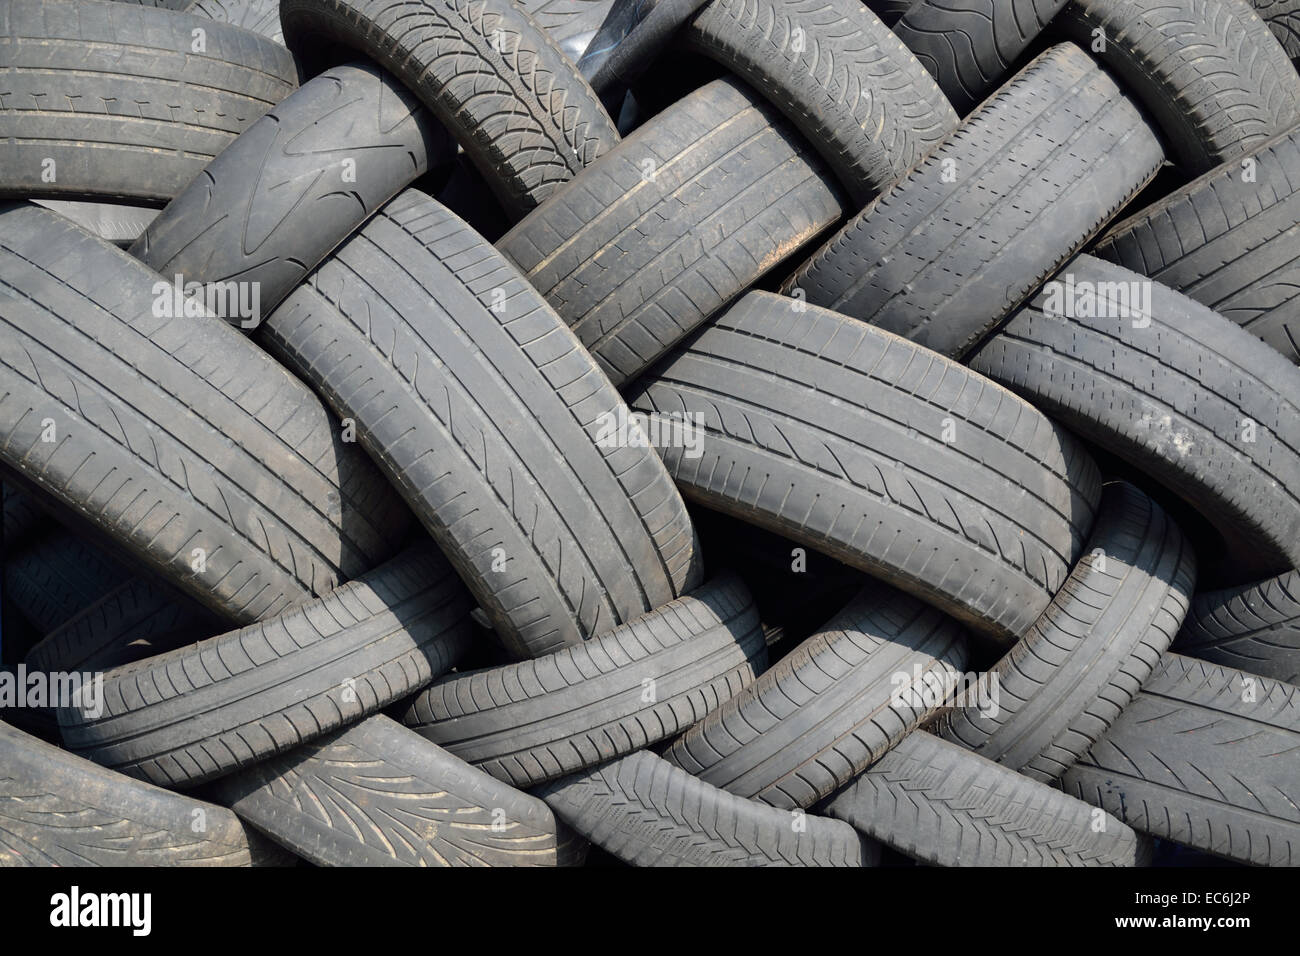 Les pneus usagés en stock Banque D'Images